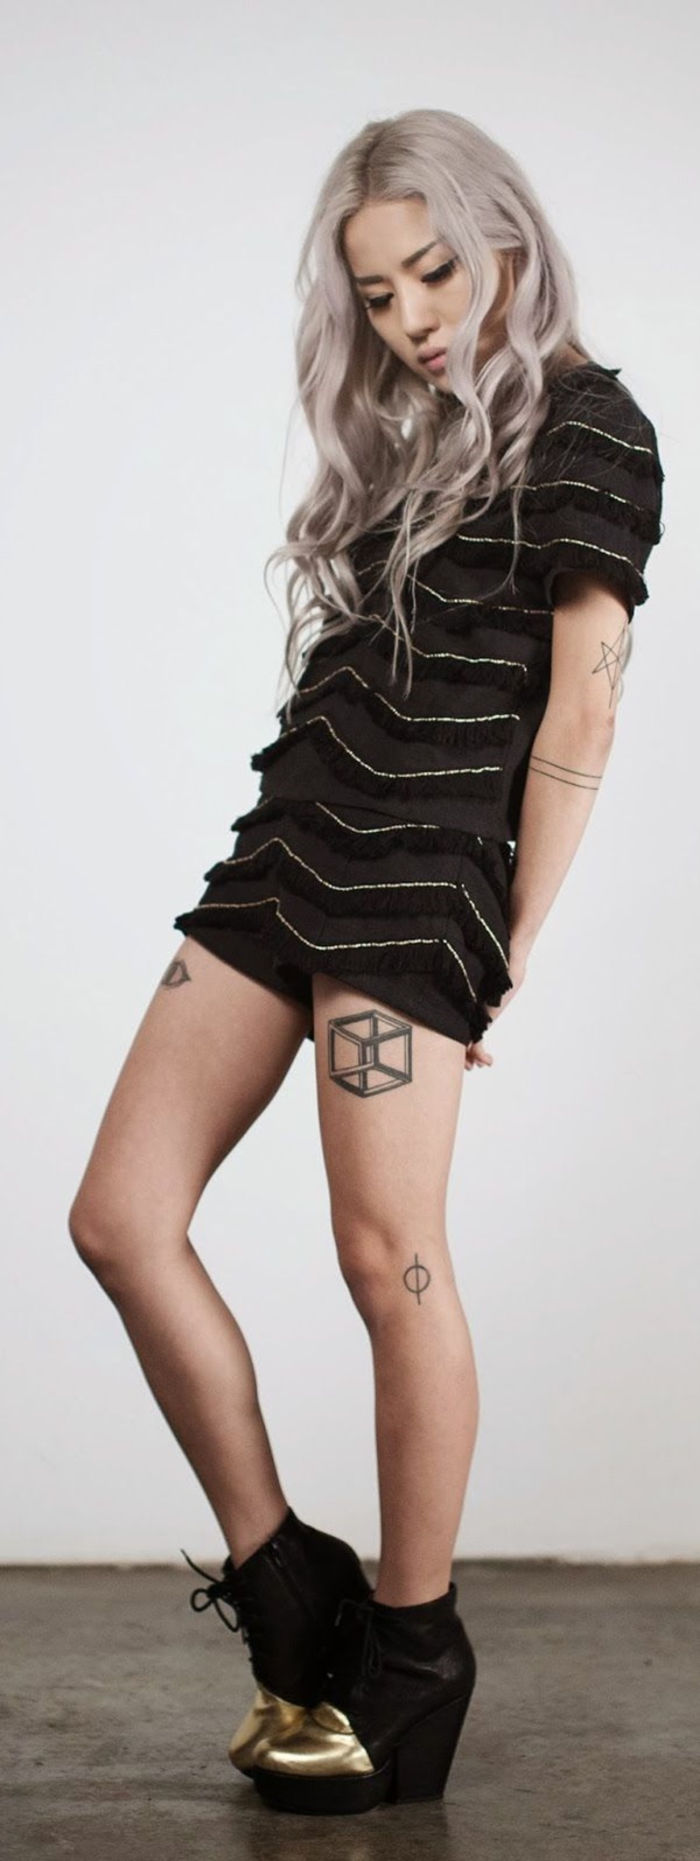 tatuaże na nogi, tatuaż na udzie, kostka, motywy kobiece tatuaż